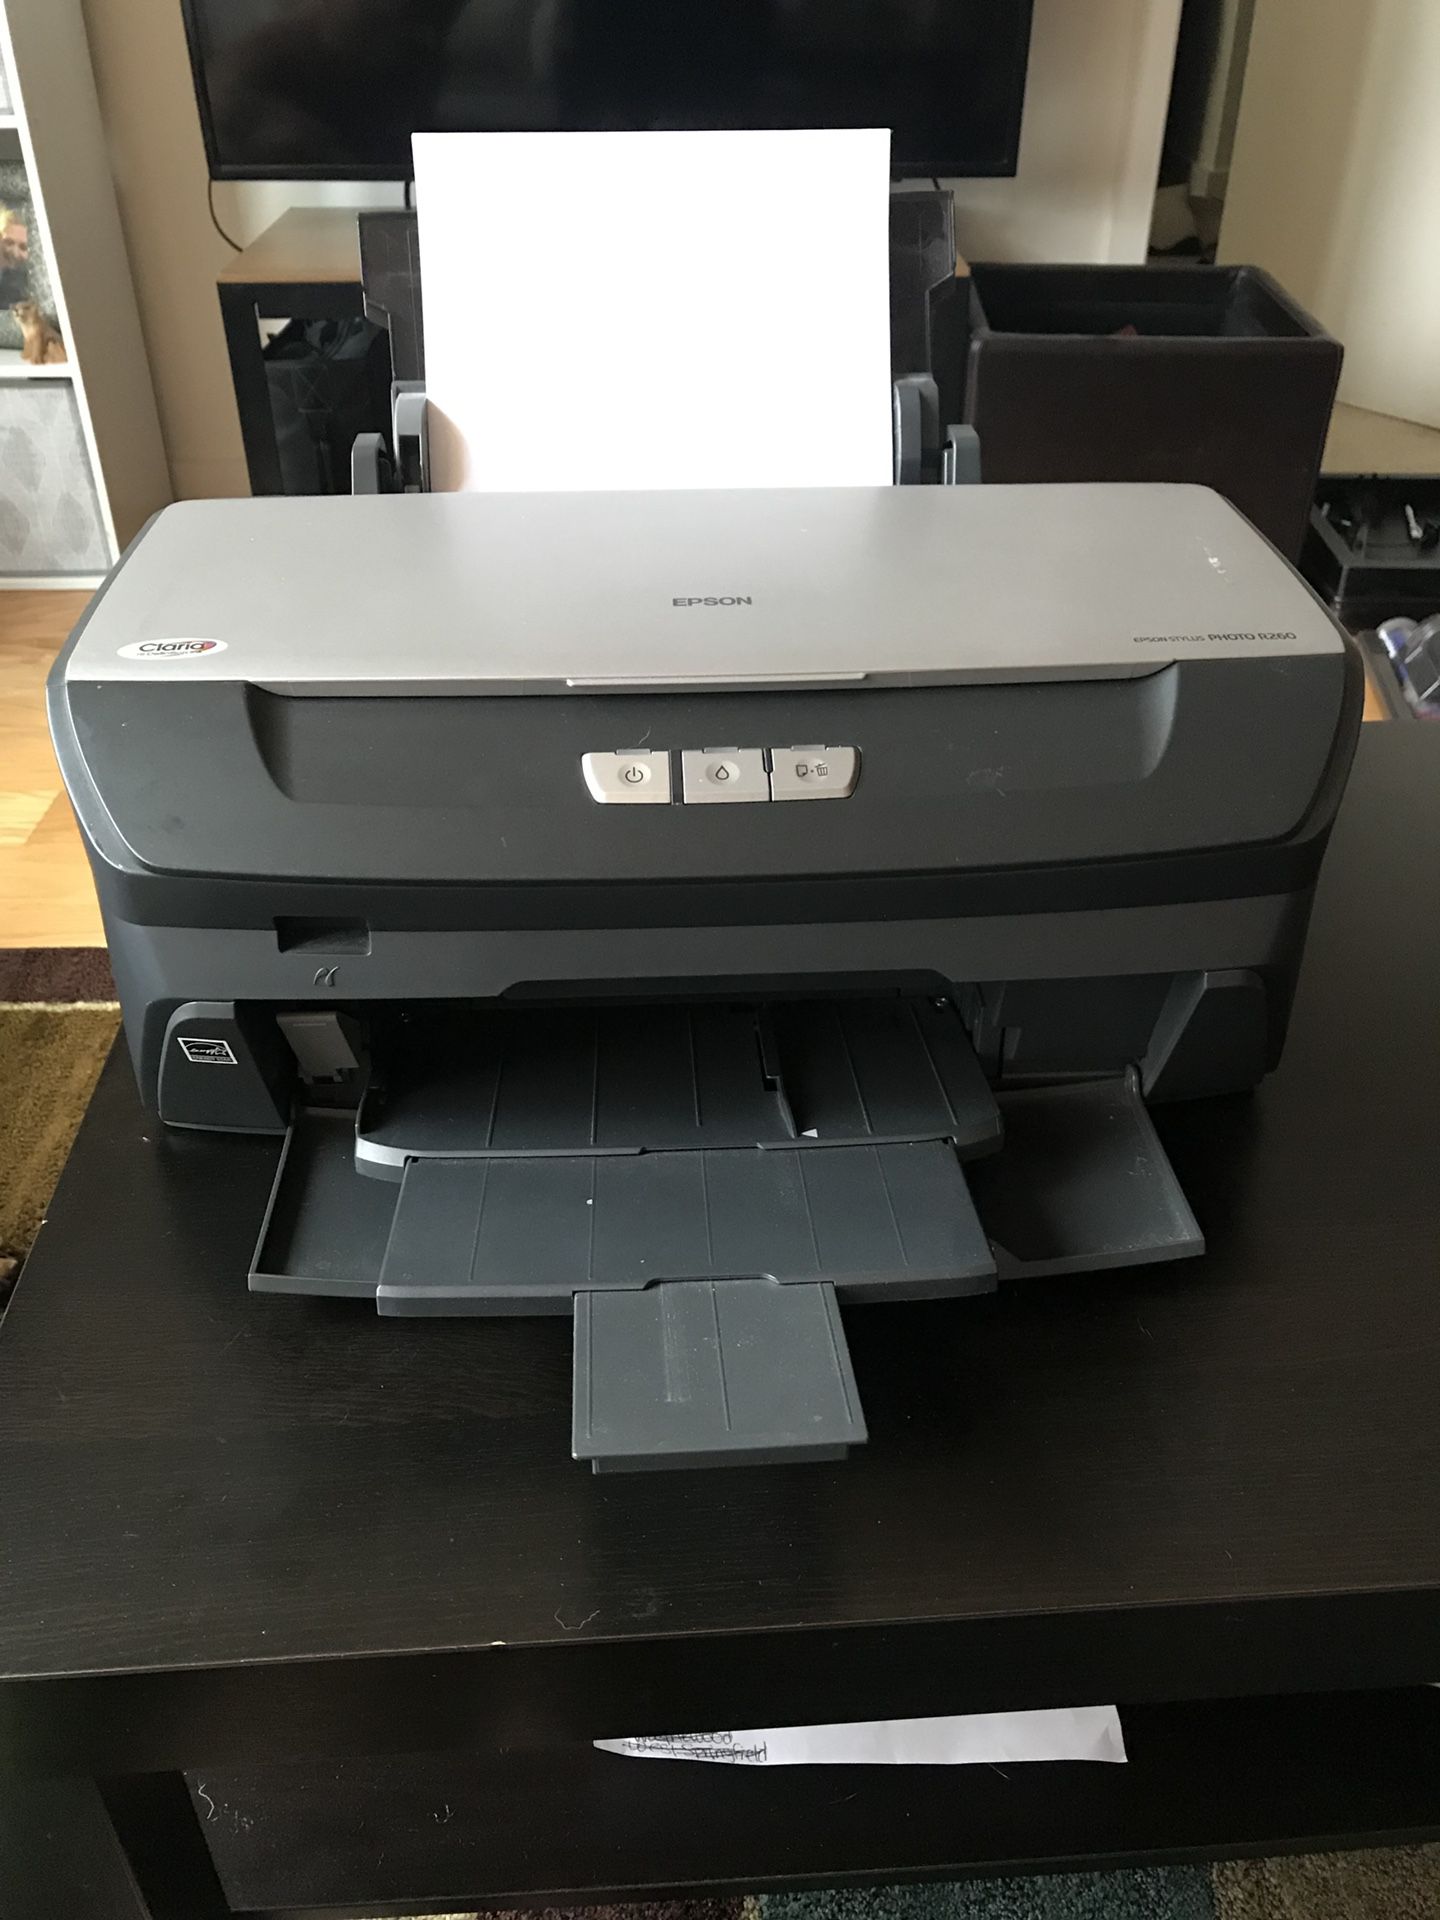 Epson Stylus Photo R260 printer